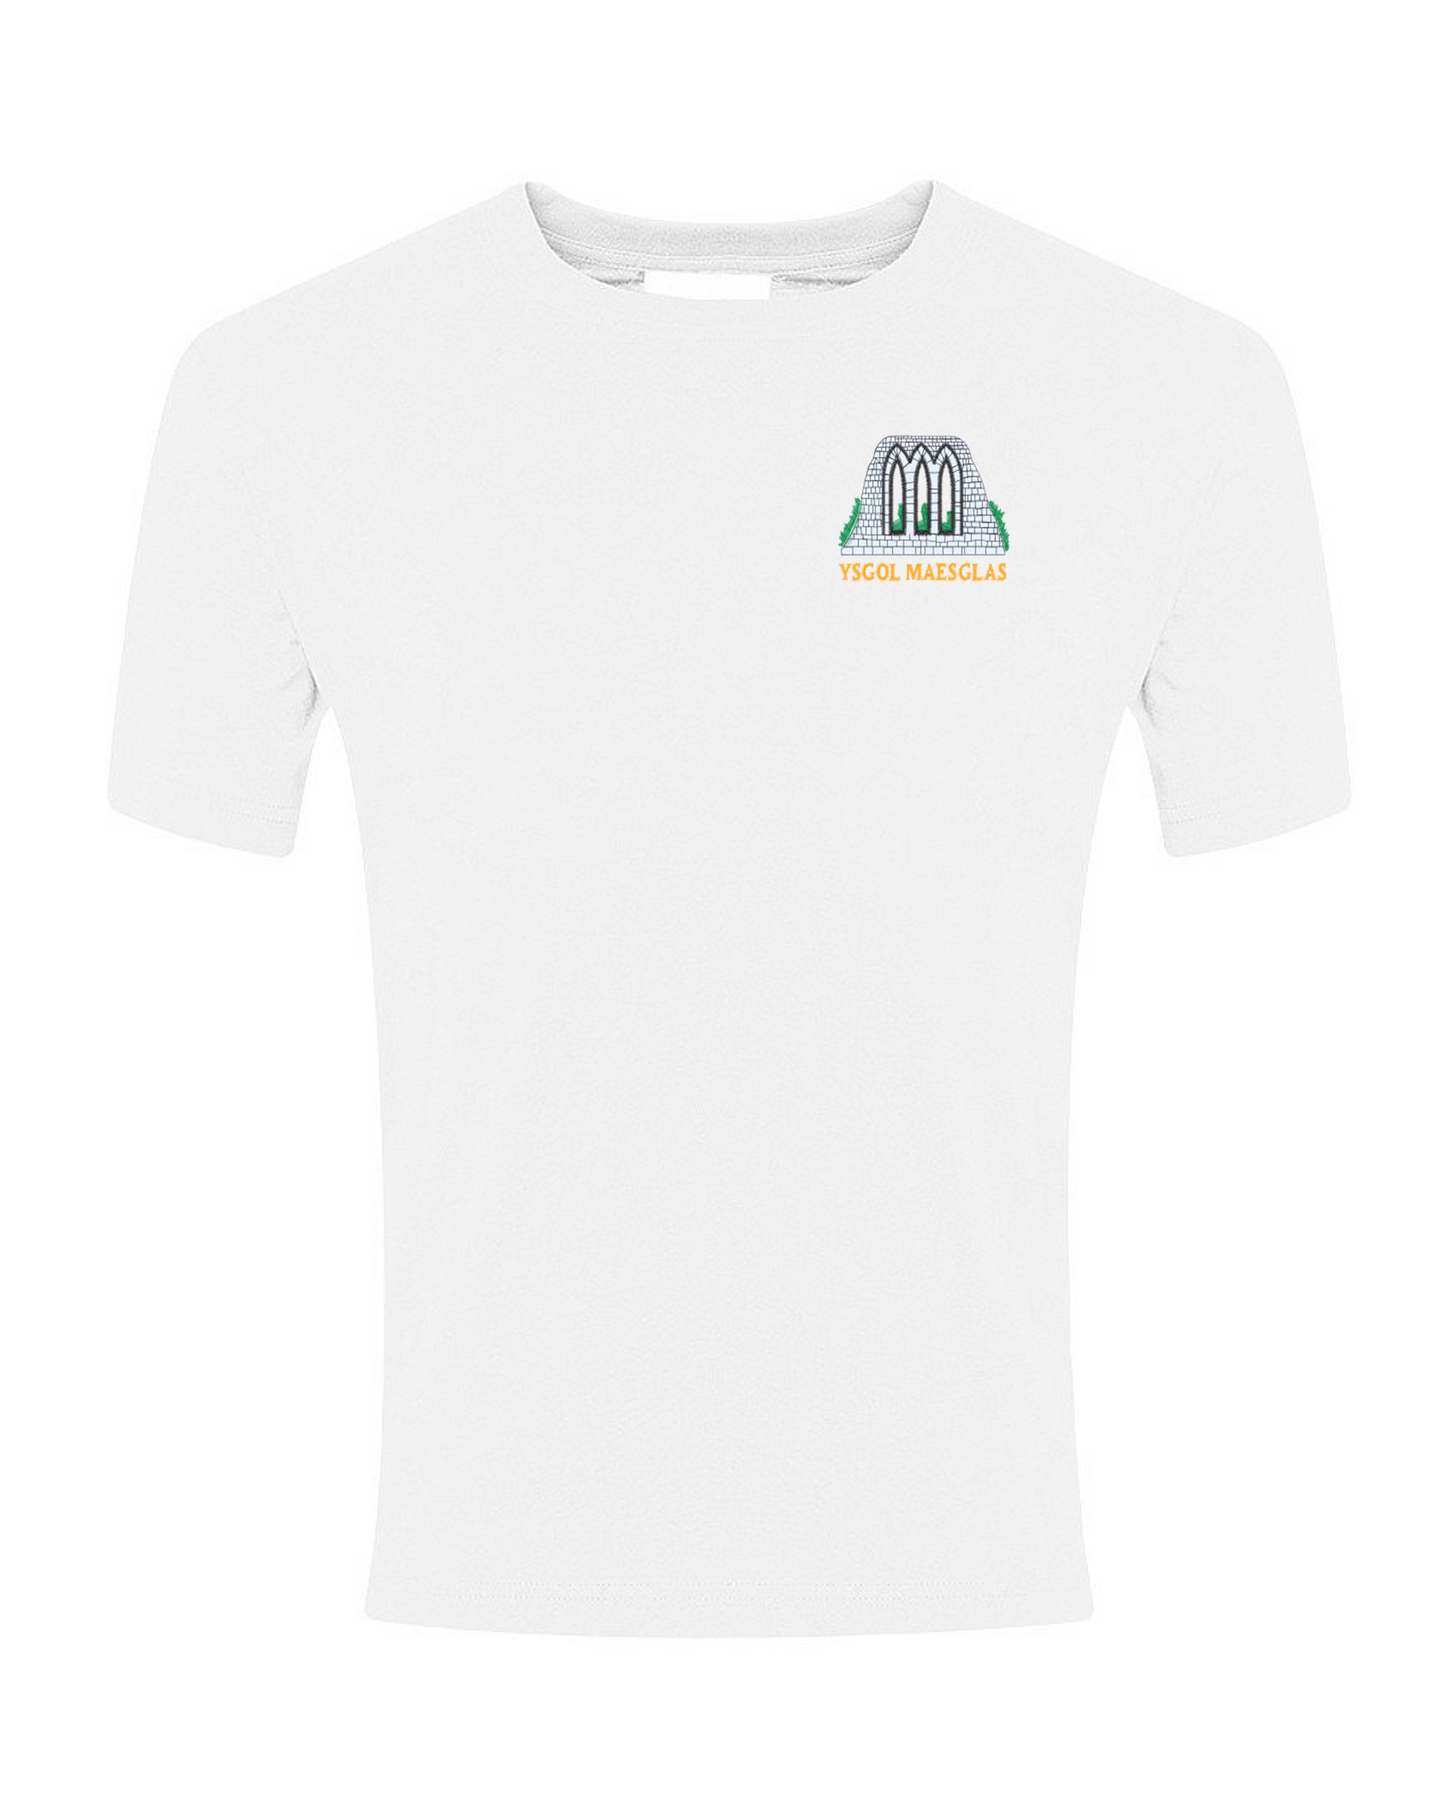 Ysgol Maesglas PE T-Shirt